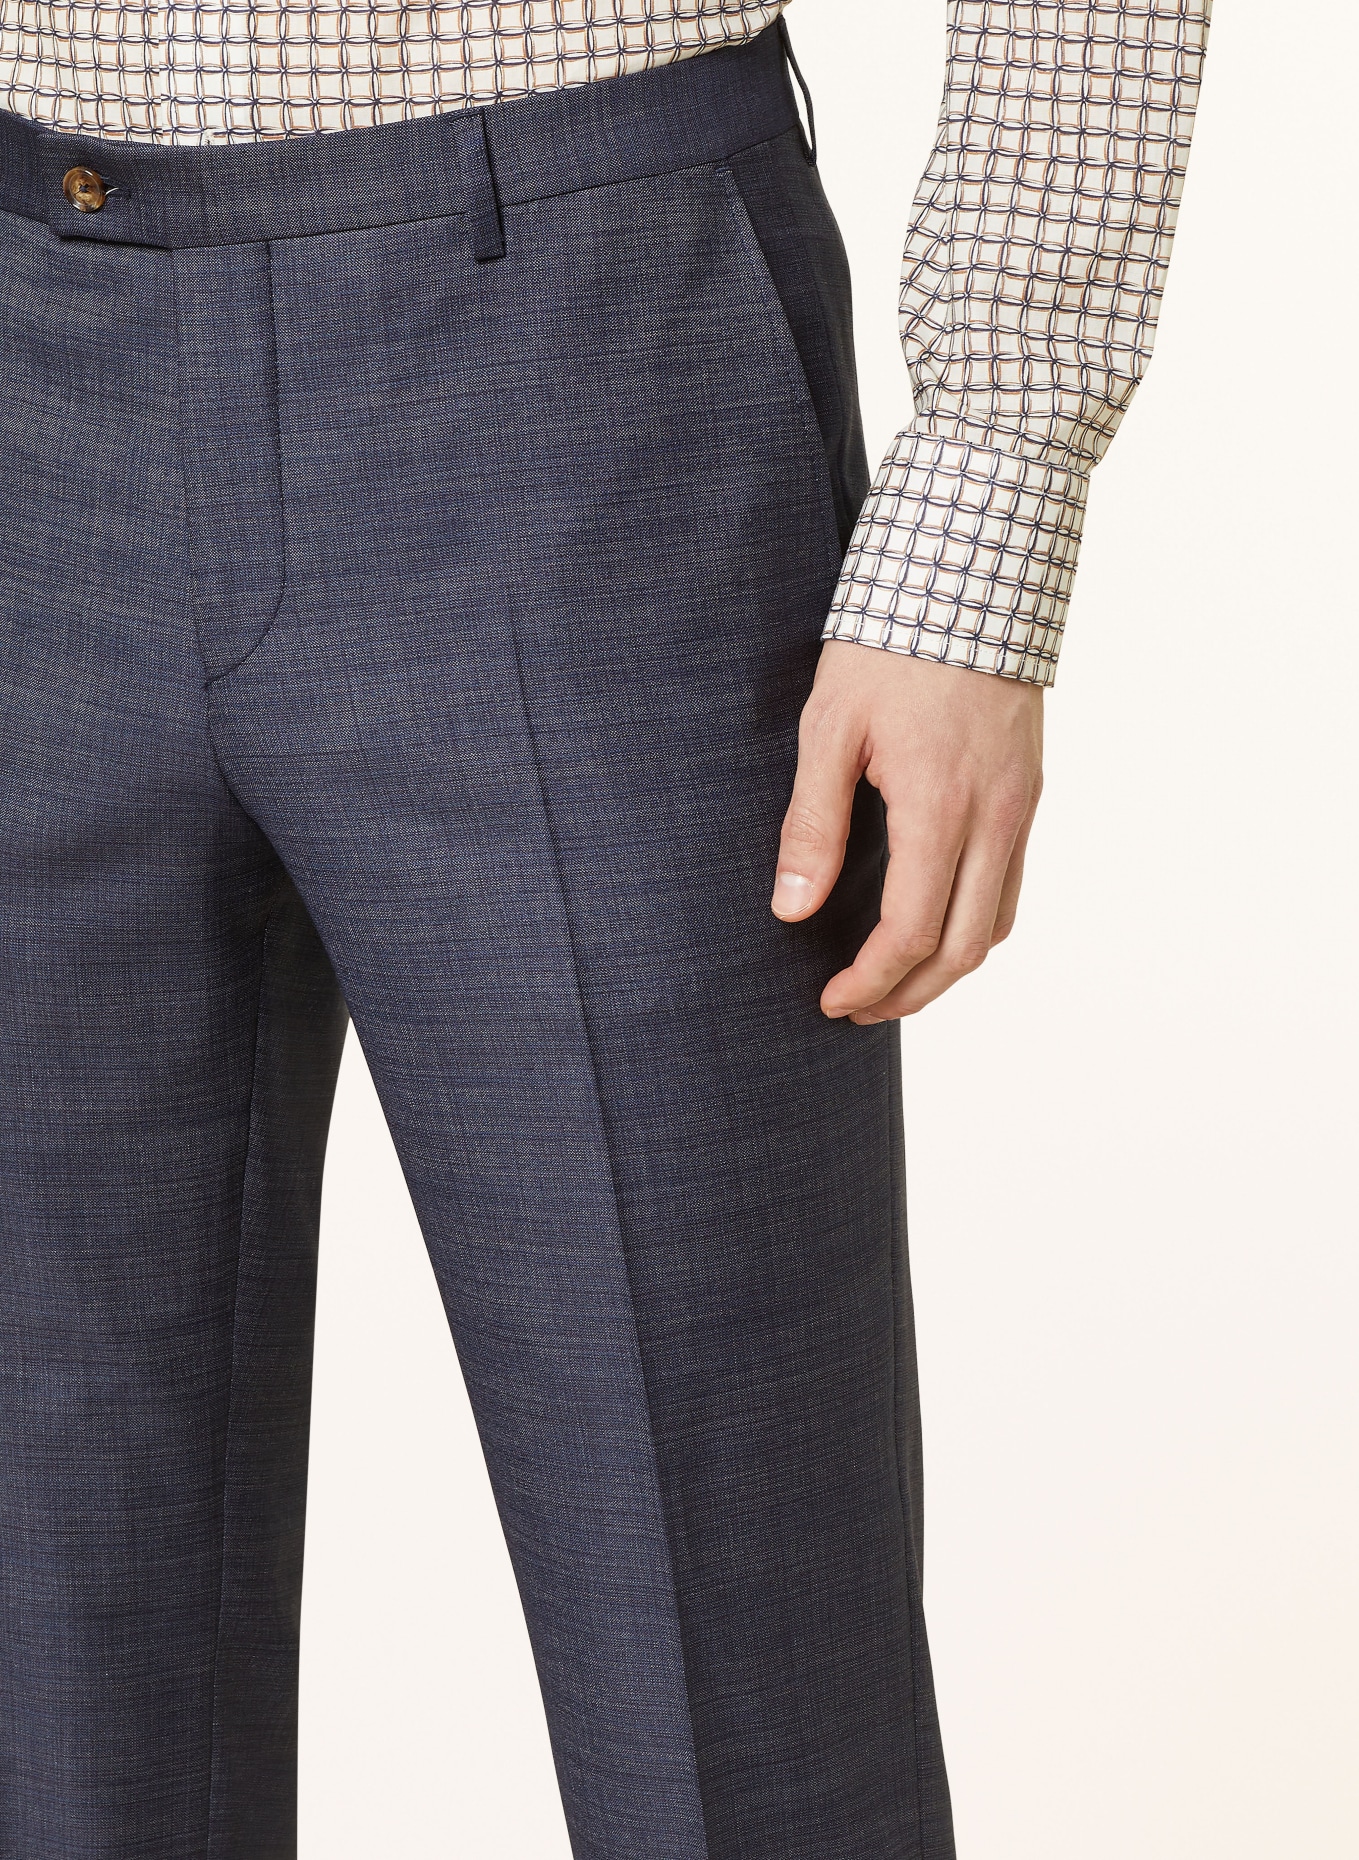 SAND COPENHAGEN Anzughose Slim Fit, Farbe: 570 NAVY (Bild 6)